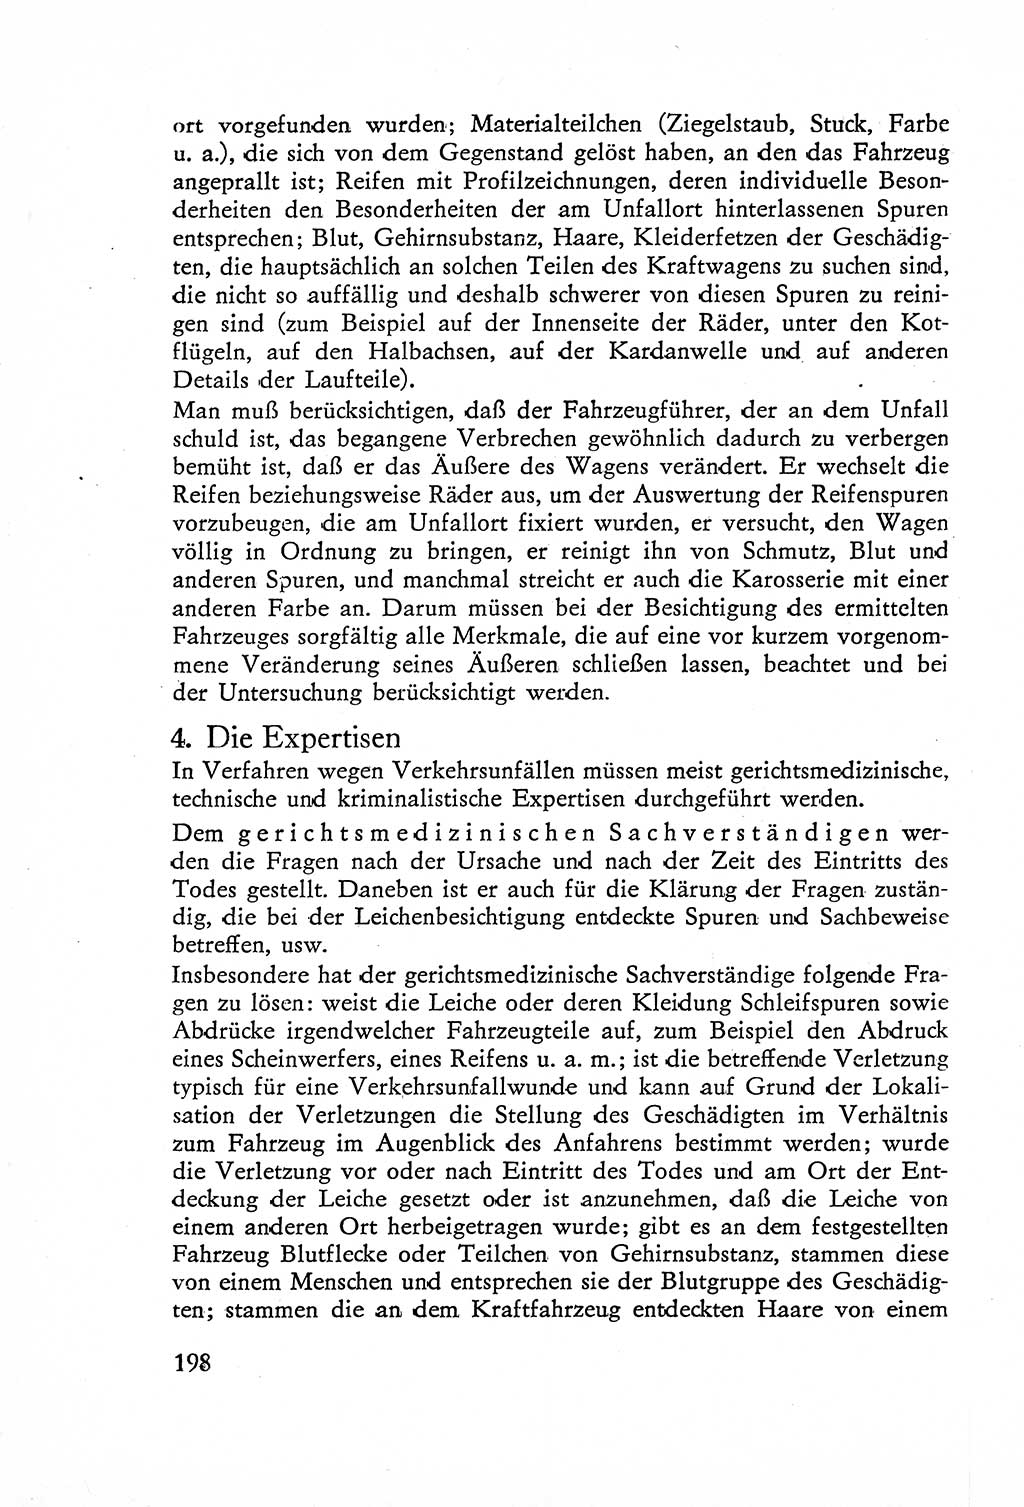 Die Untersuchung einzelner Verbrechensarten [Deutsche Demokratische Republik (DDR)] 1960, Seite 198 (Unters. Verbr.-Art. DDR 1960, S. 198)